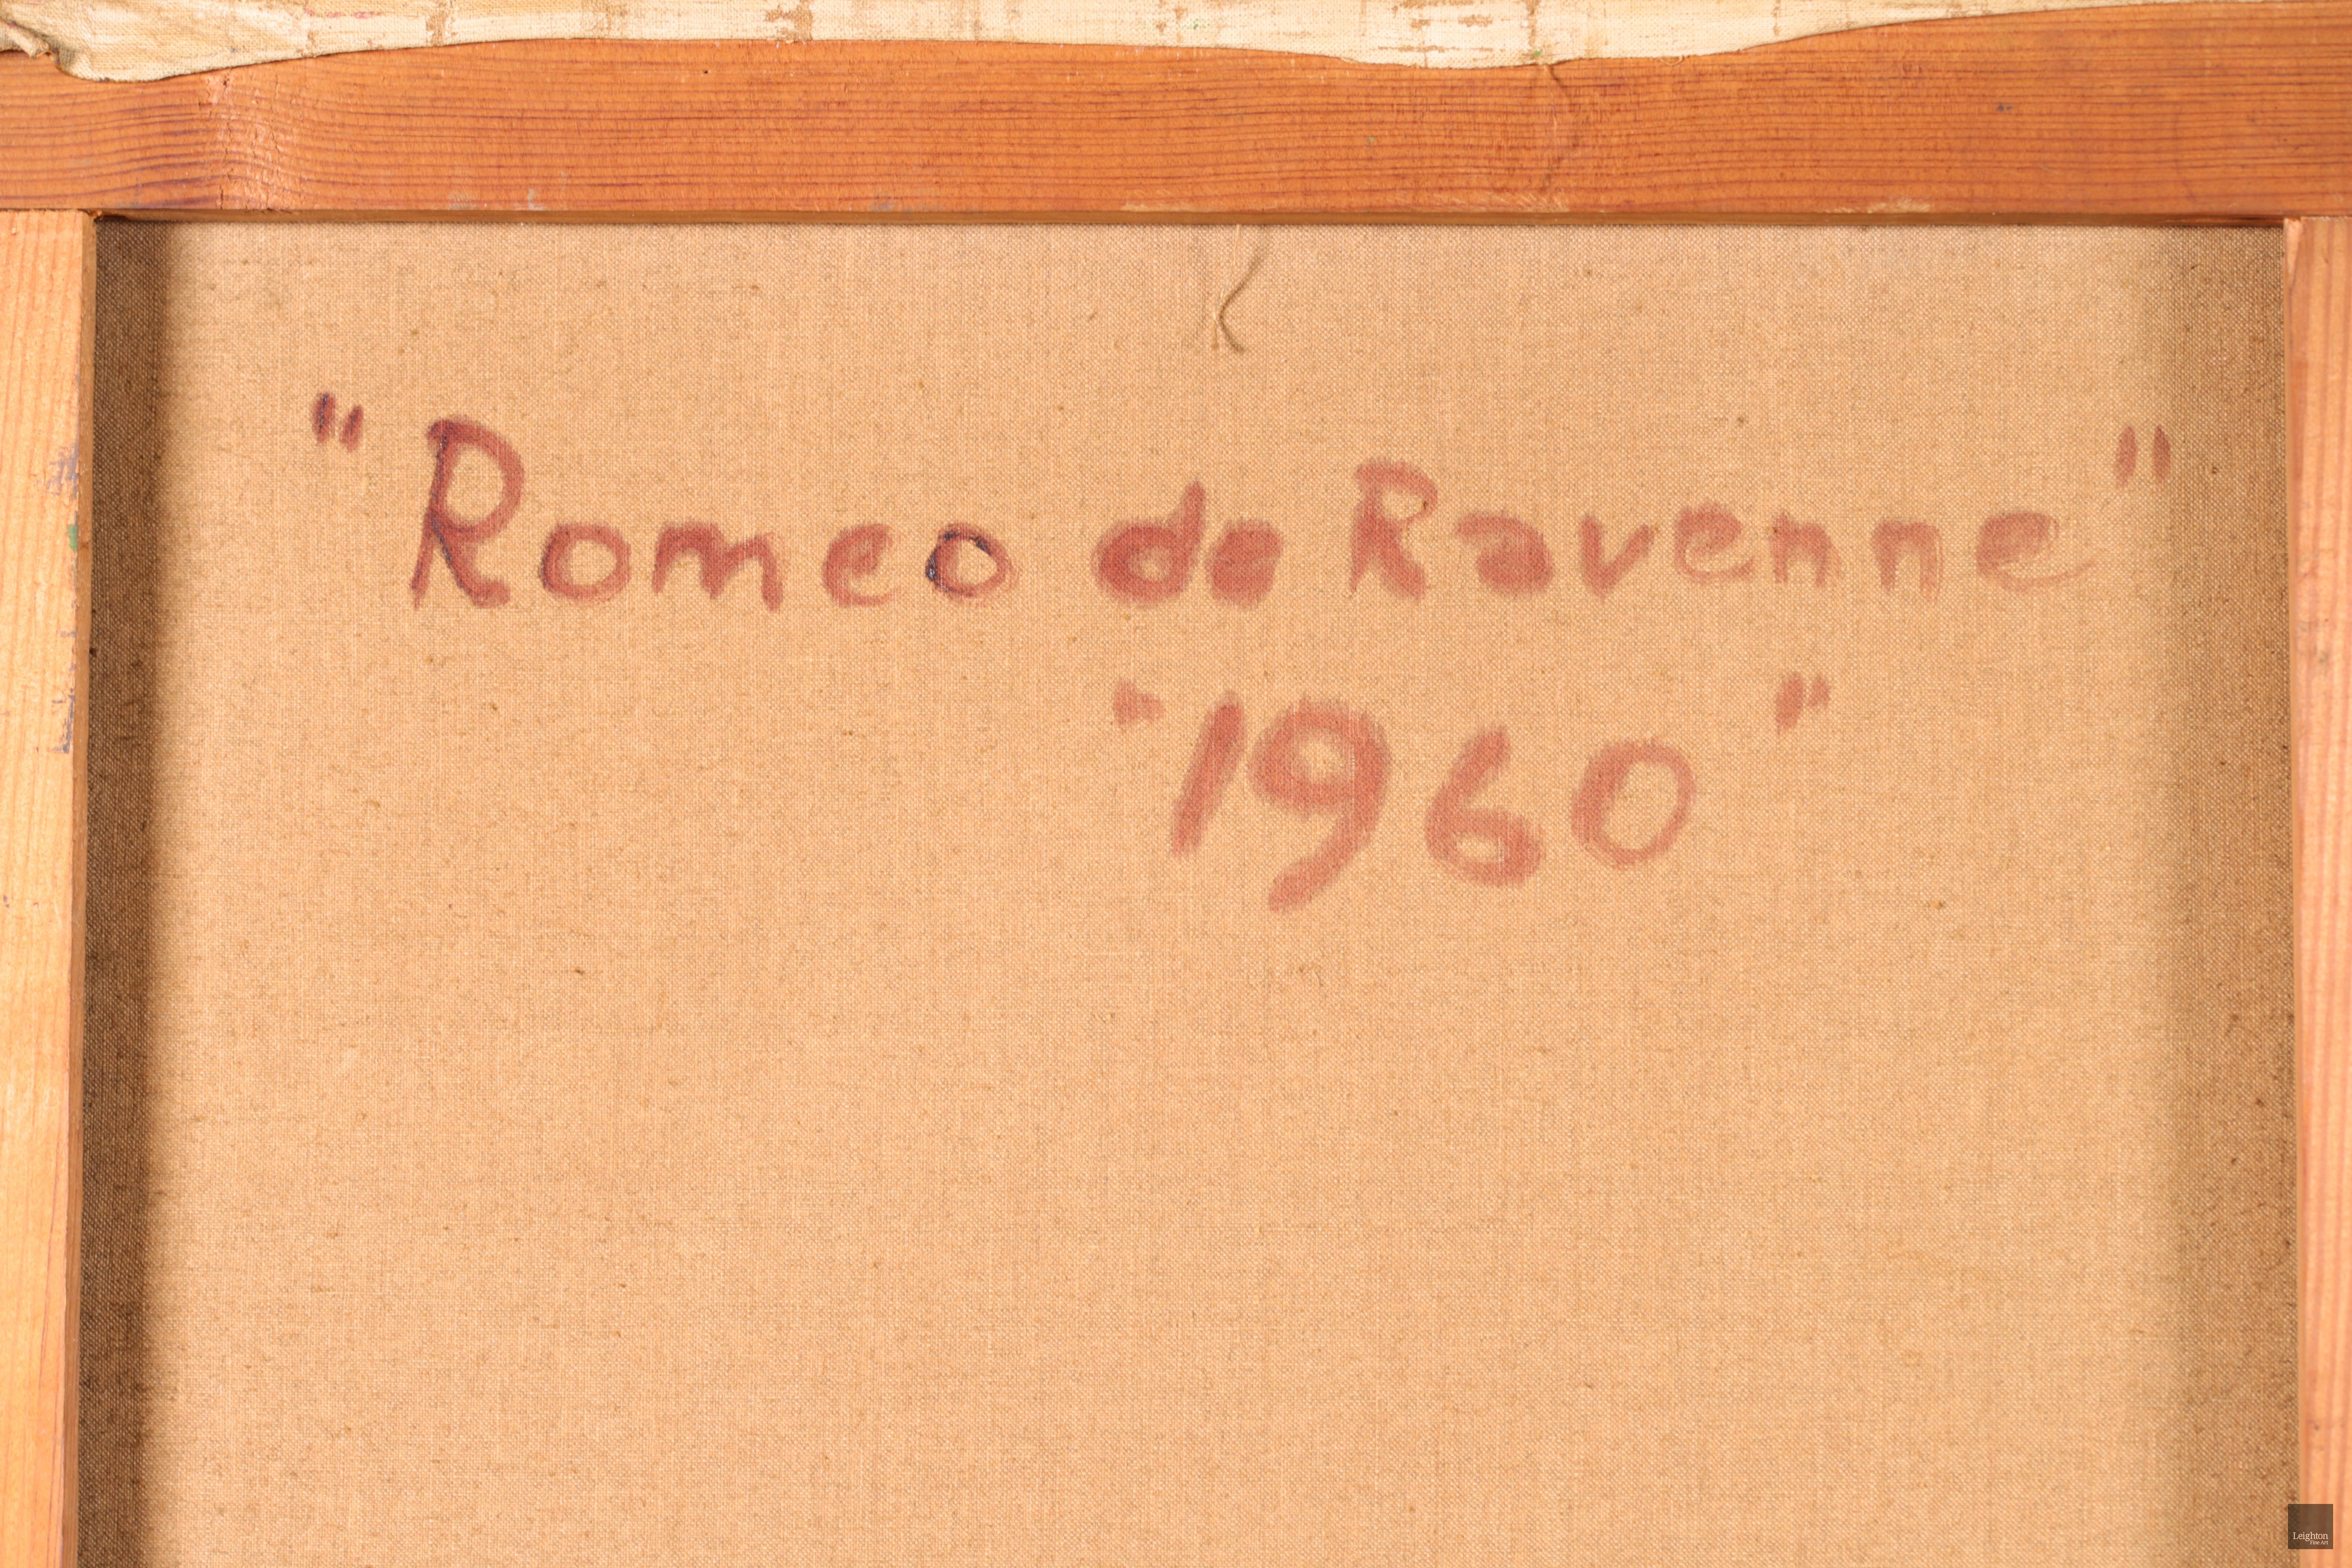 Romeo de Ravenne - Cubist Oil, Figure & Boat on Landscape by Camille Hilaire For Sale 6